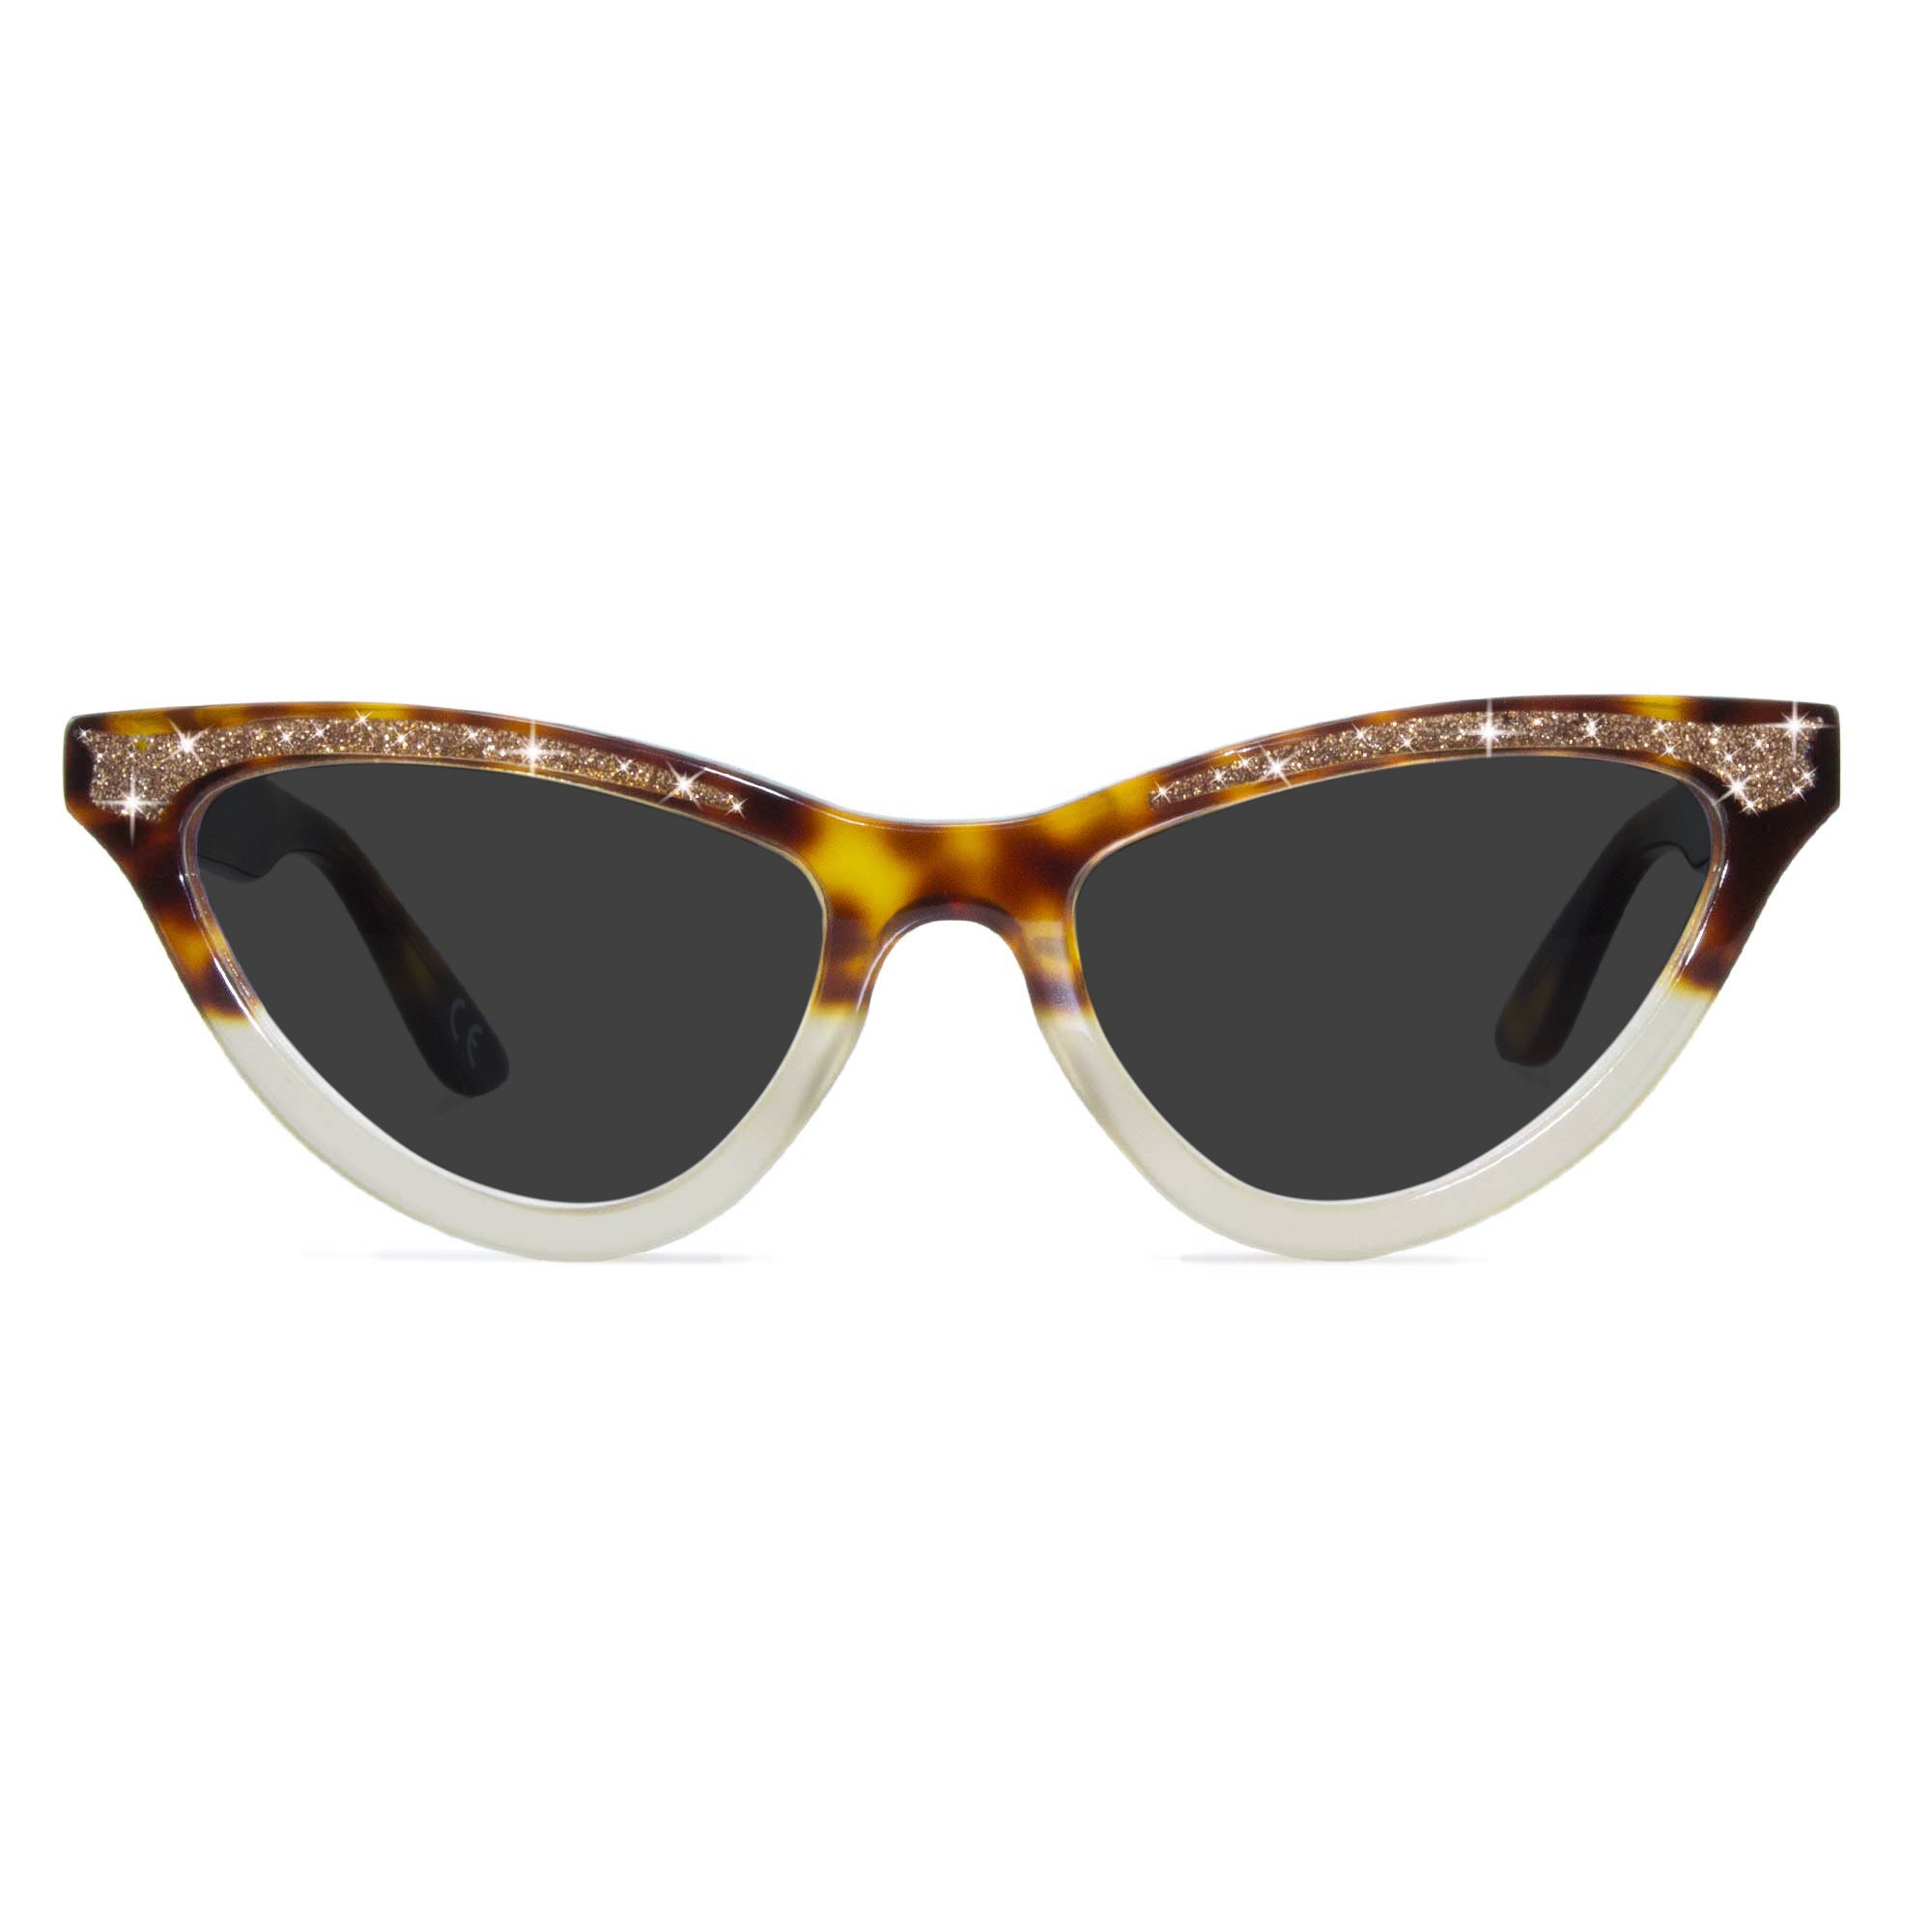 tortoiseshell cat eye sunglasses